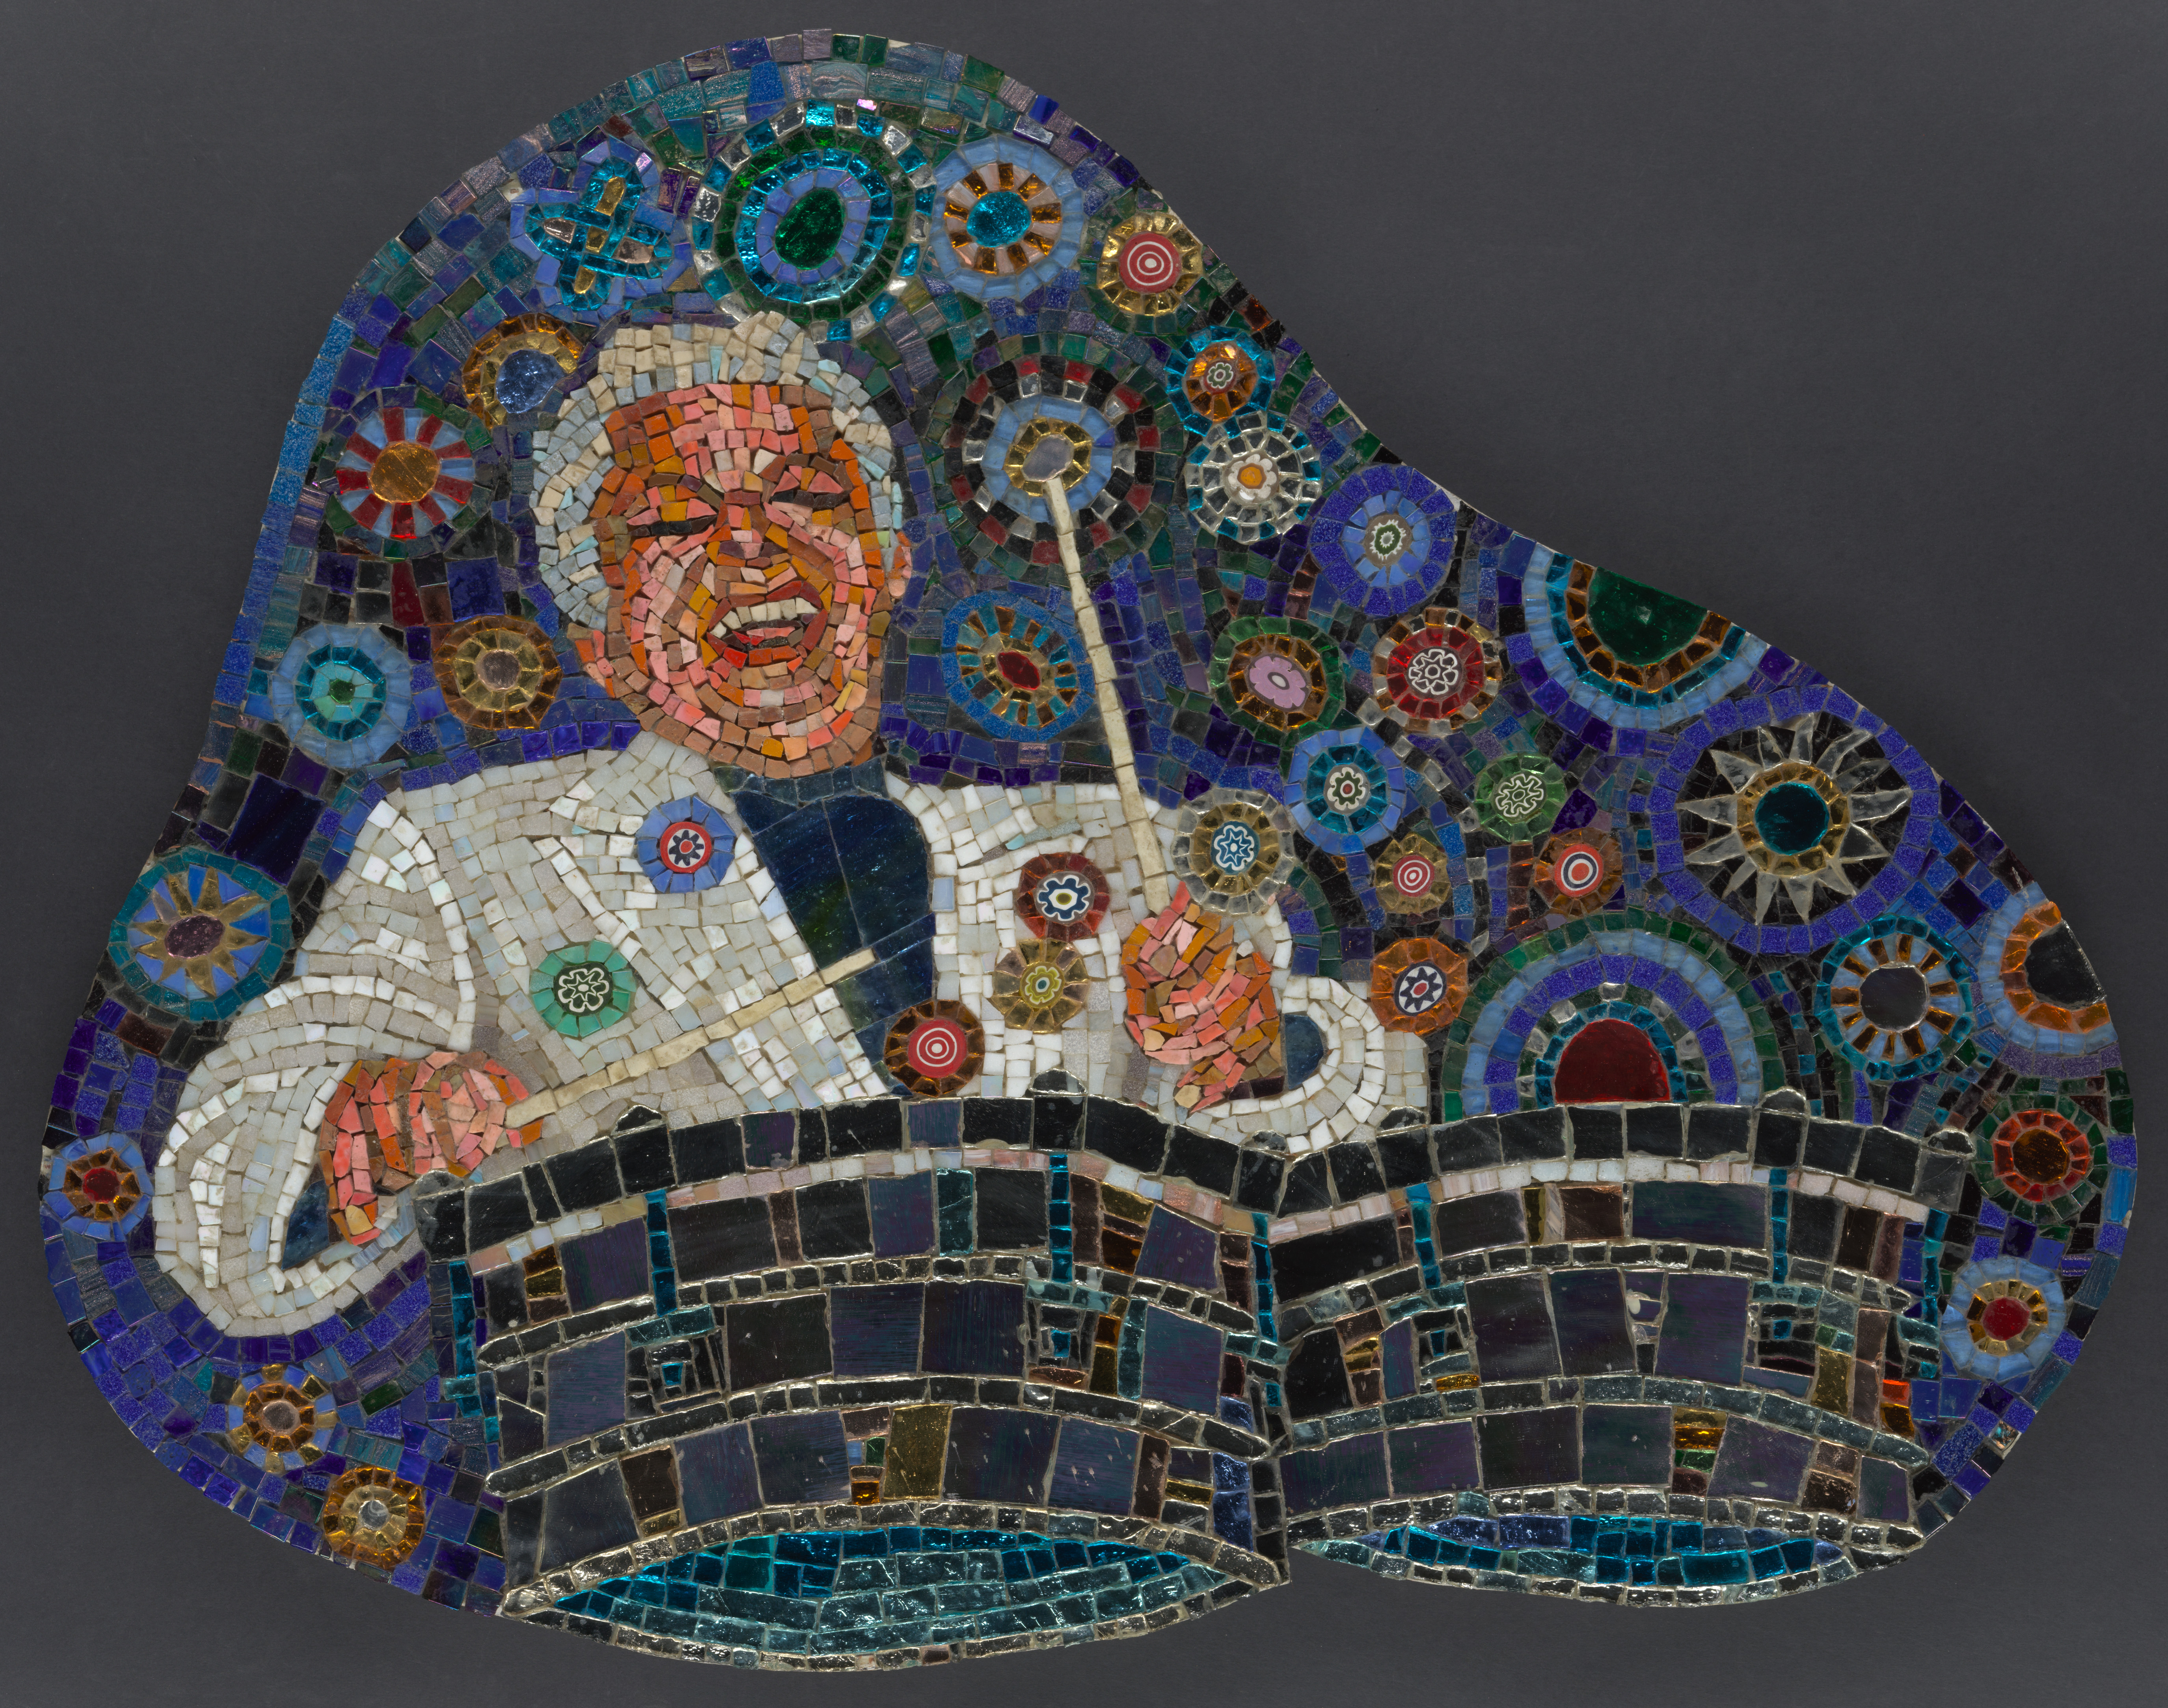 Una imagen de un mosaico mostraba al famoso músico Tito Puente con una sonrisa exuberante tocando alegremente tambores con un fondo azul lleno de círculos multicolores.